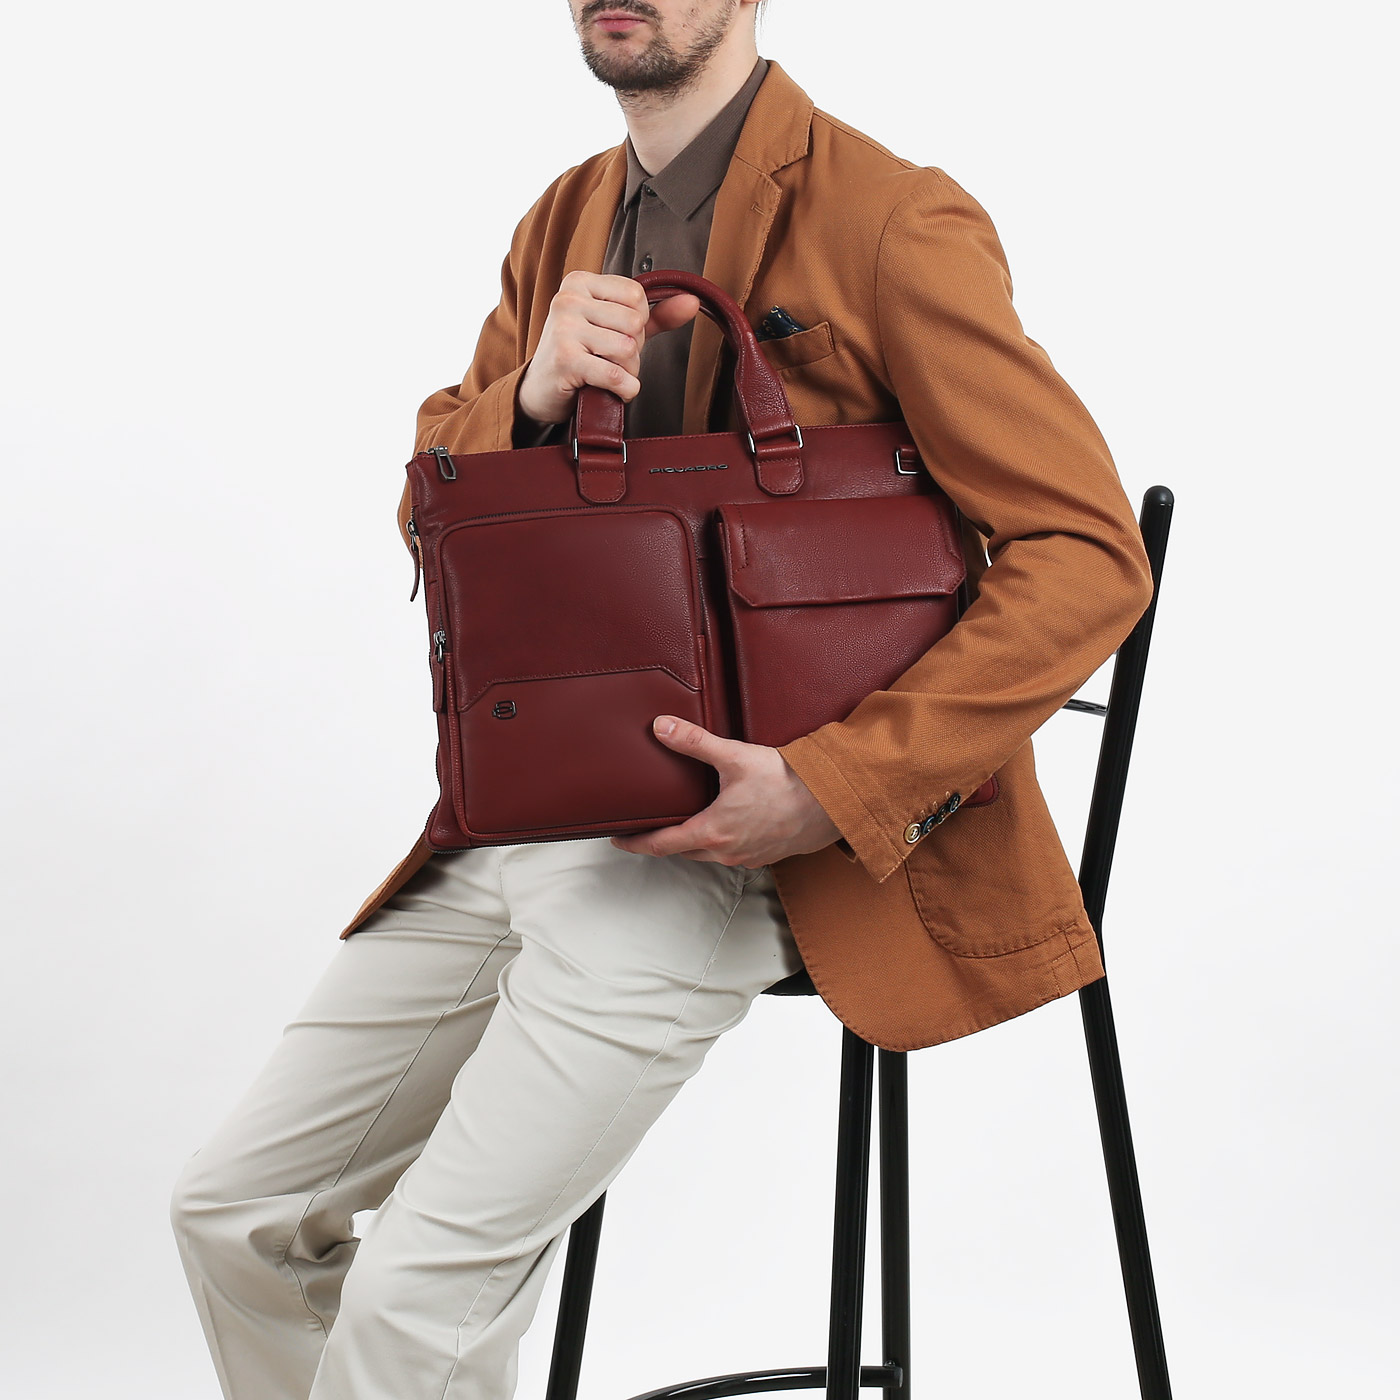 Бизнес-сумка с дополнительным объемом Piquadro Martin